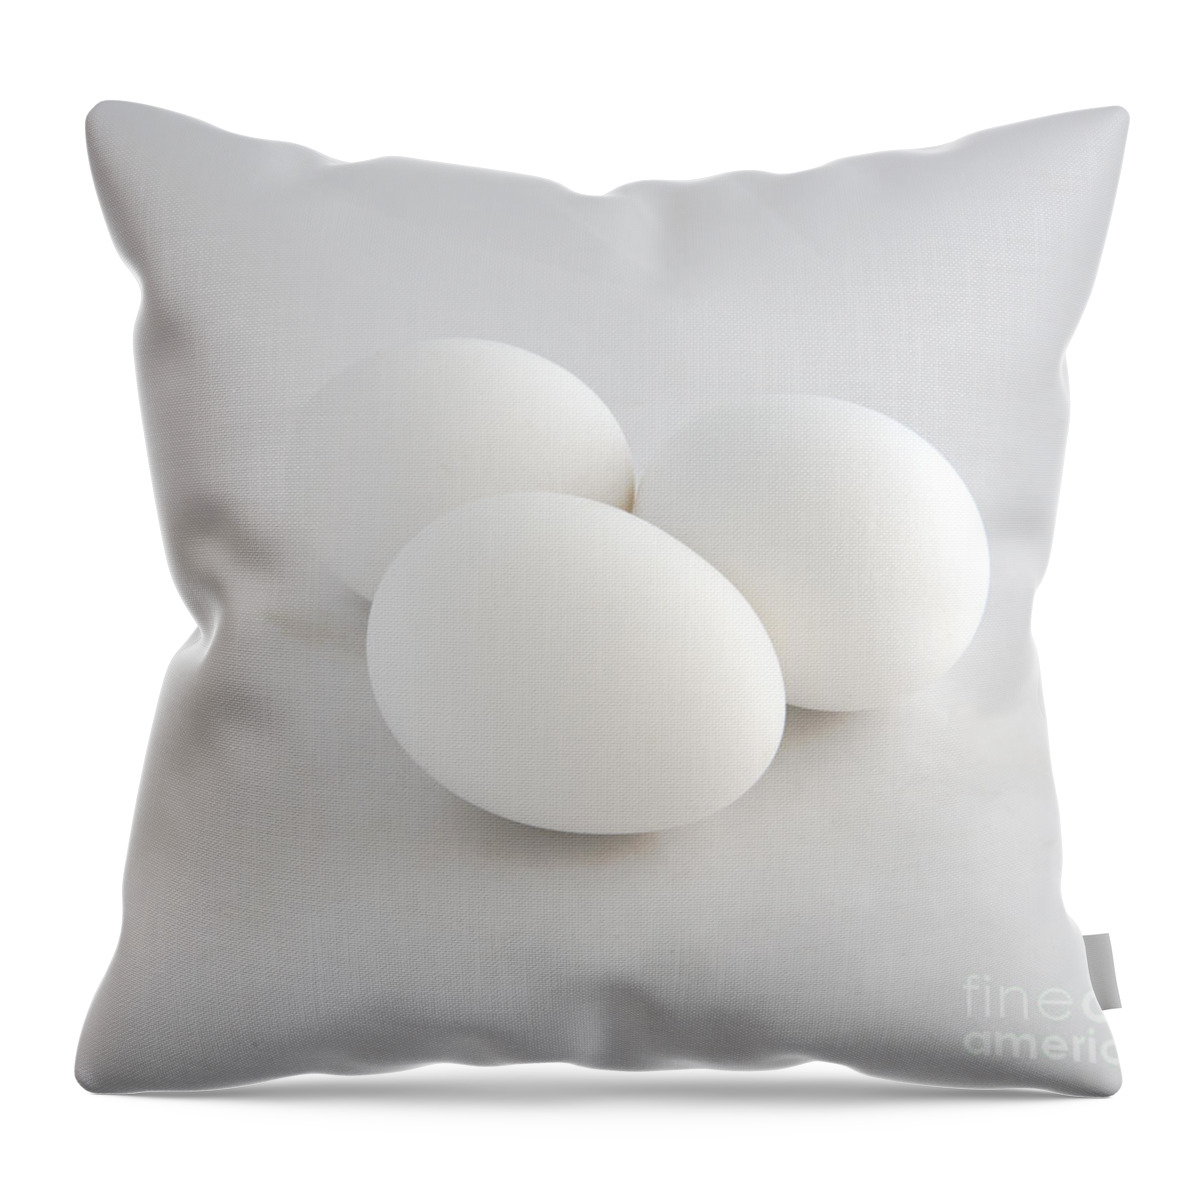 Eggs Throw Pillow featuring the photograph Three White Eggs by Kae Cheatham